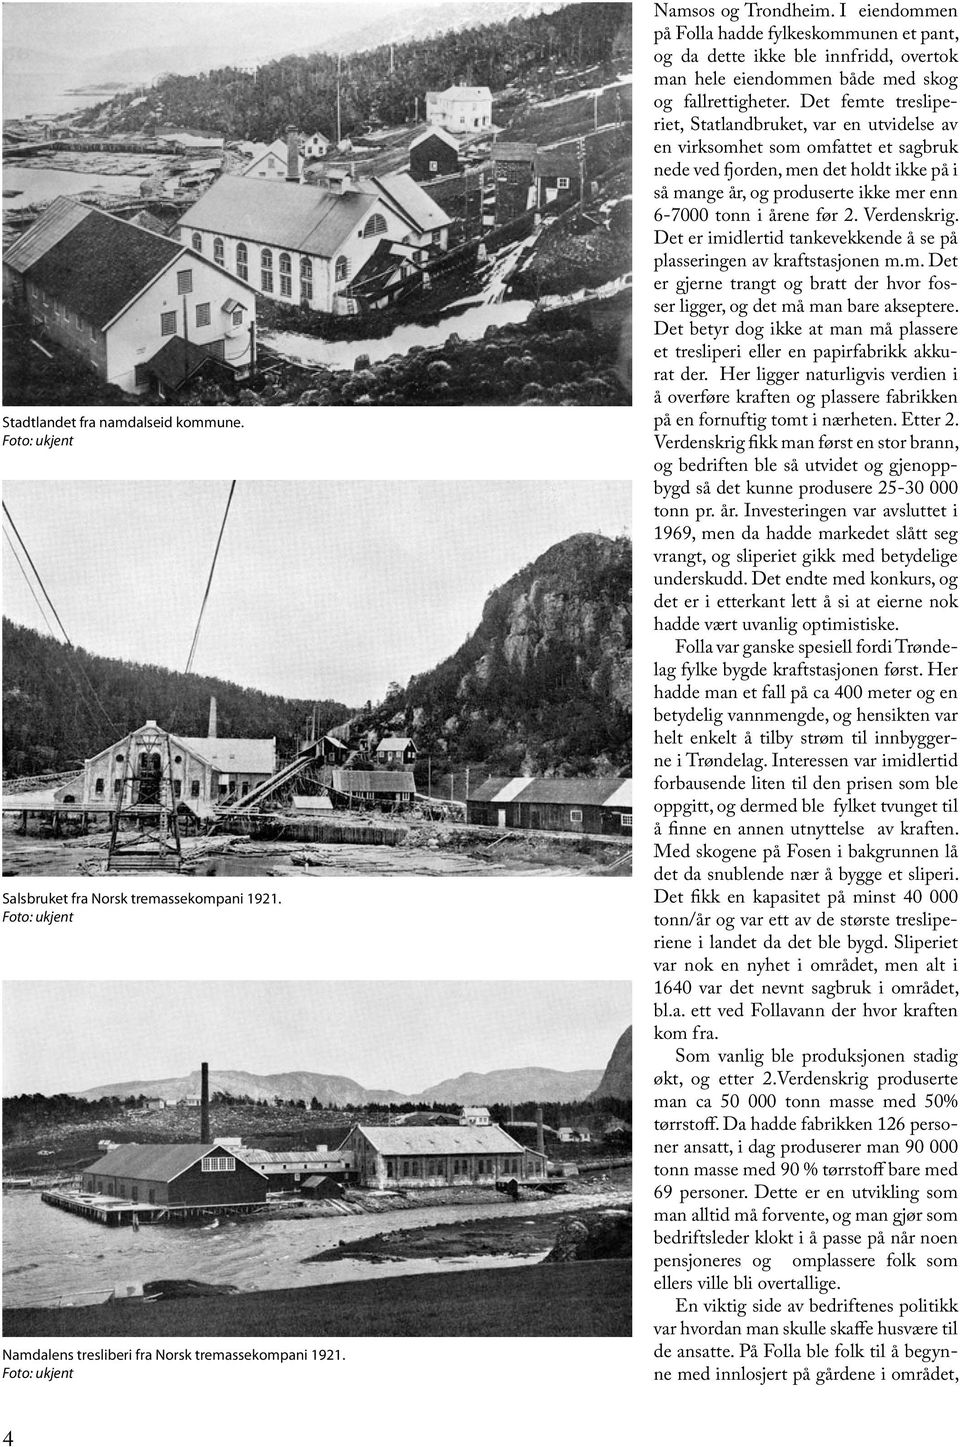 Det femte tresliperiet, Statlandbruket, var en utvidelse av en virksomhet som omfattet et sagbruk nede ved fjorden, men det holdt ikke på i så mange år, og produserte ikke mer enn 6-7000 tonn i årene